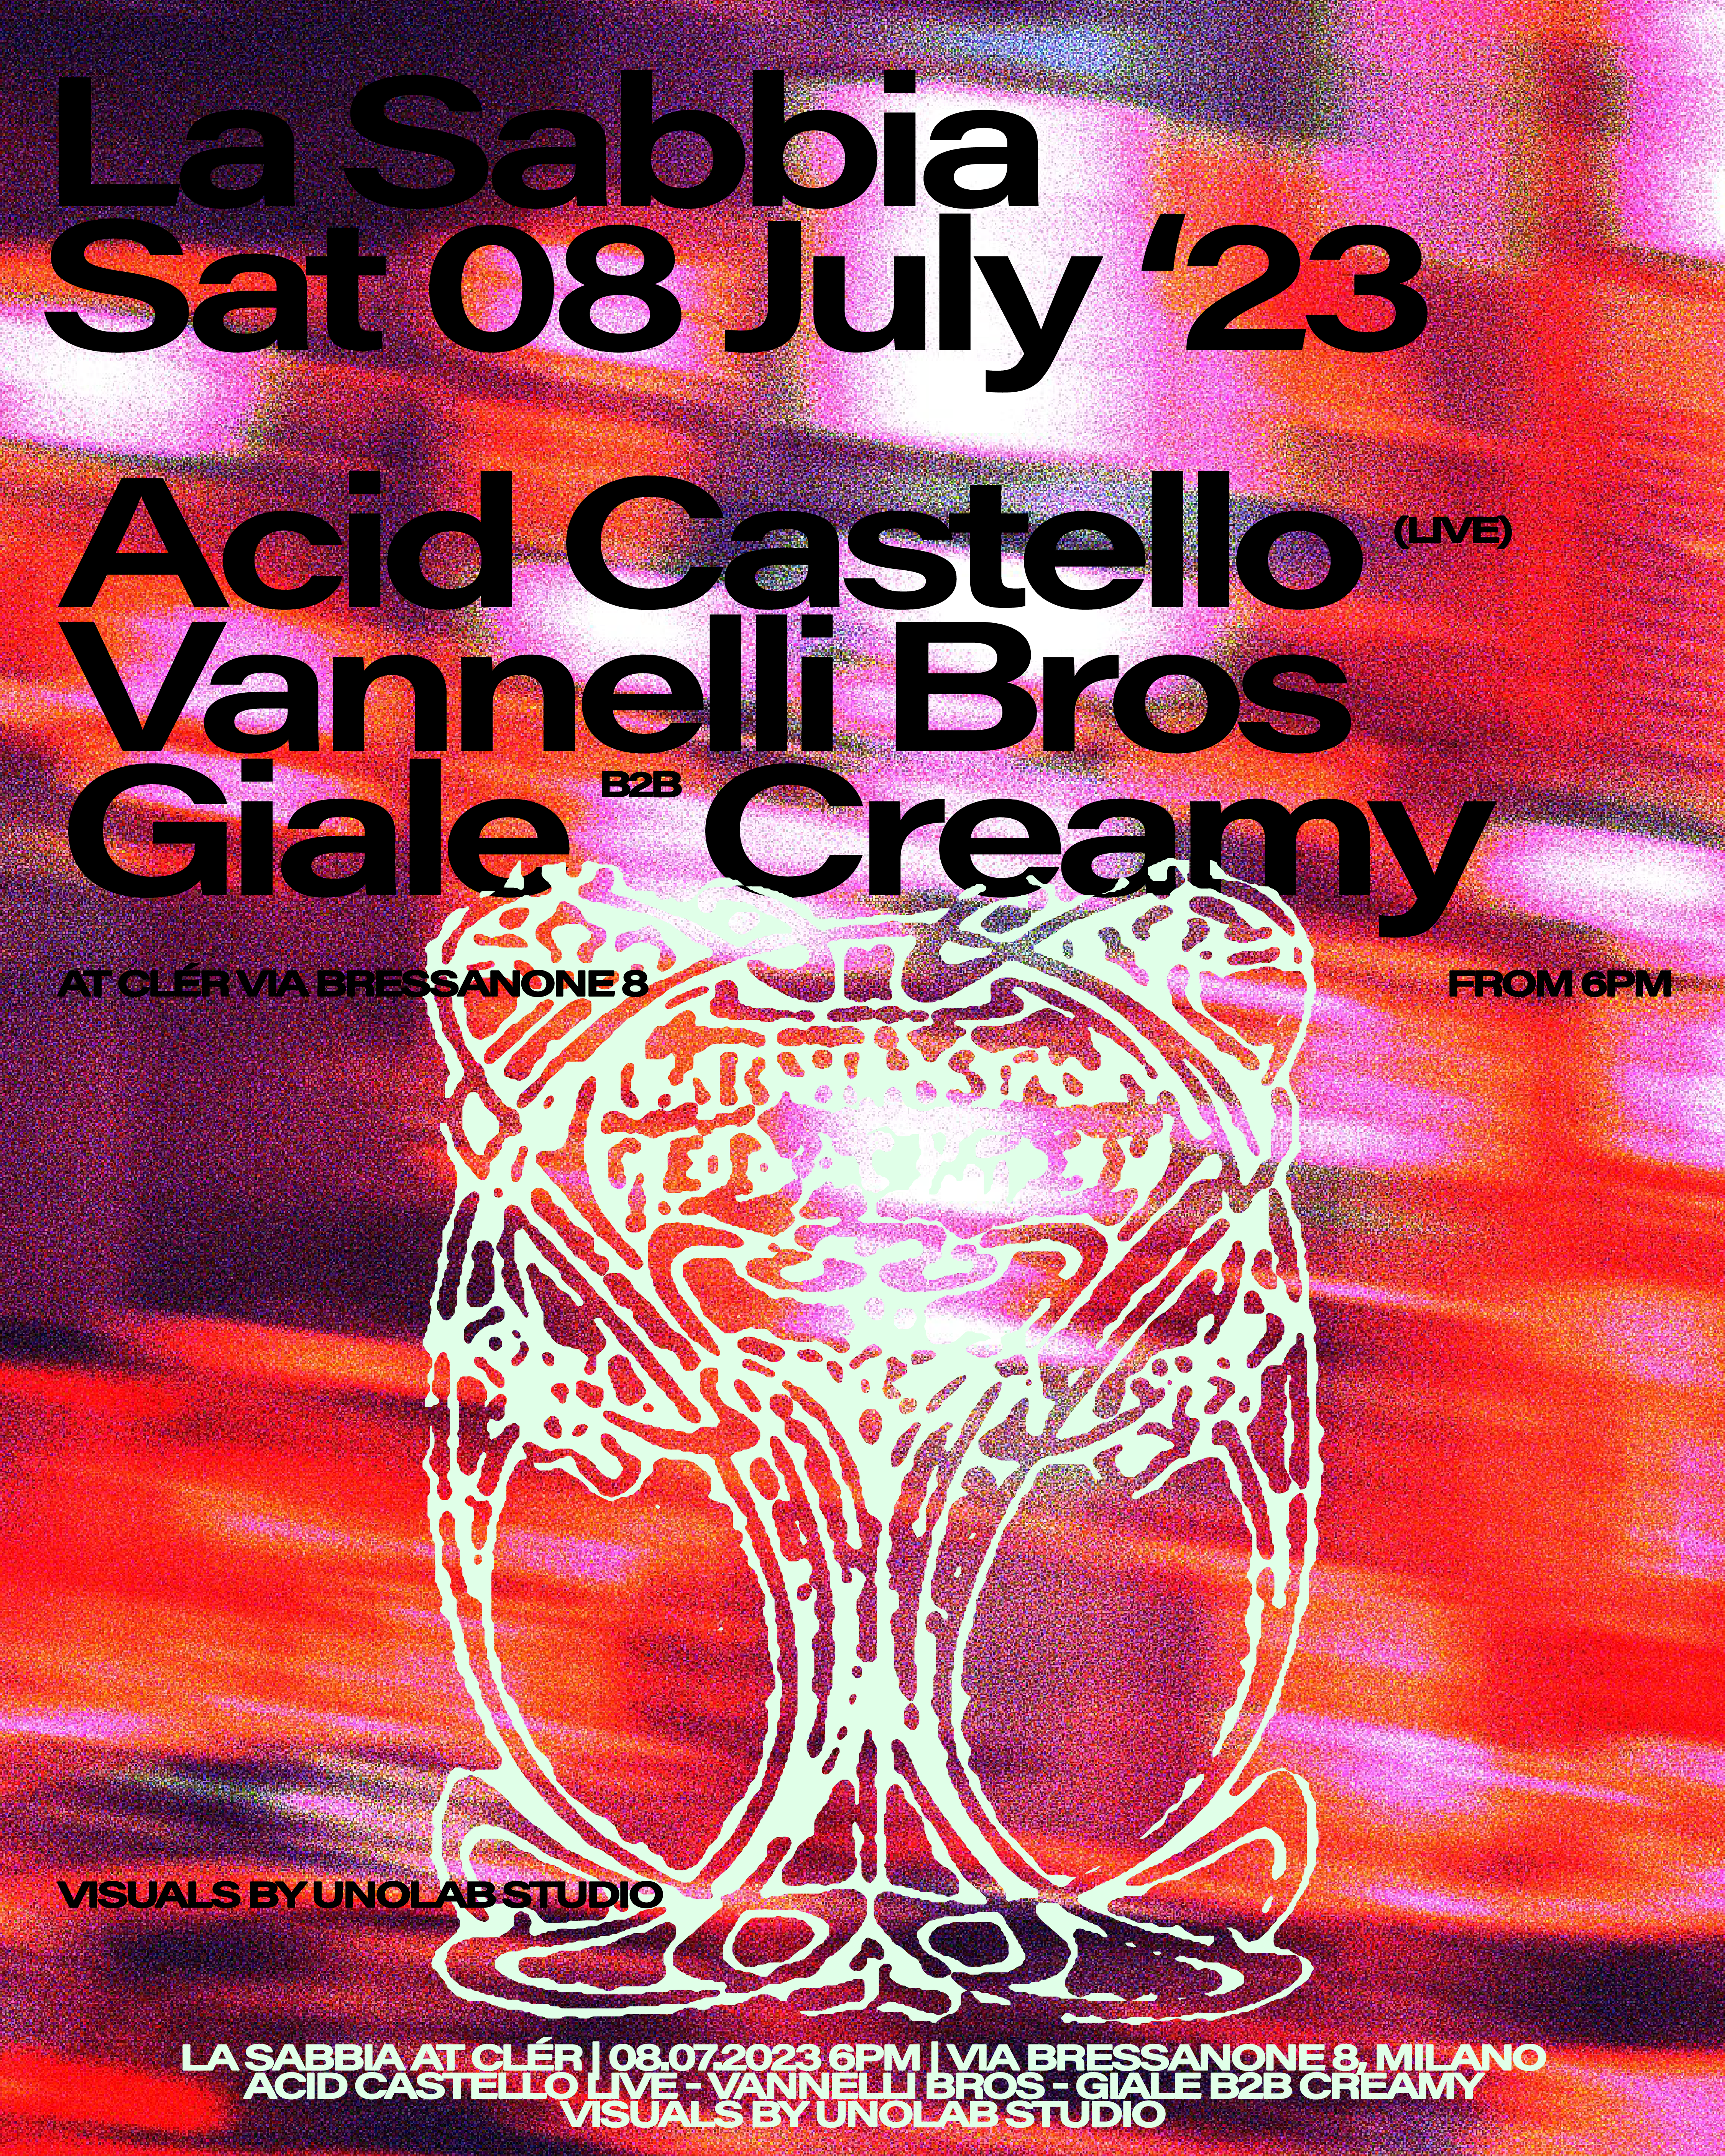 La Sabbia with Acid Castello Live, Vannelli Bros, Giale b2b Creamy - フライヤー表